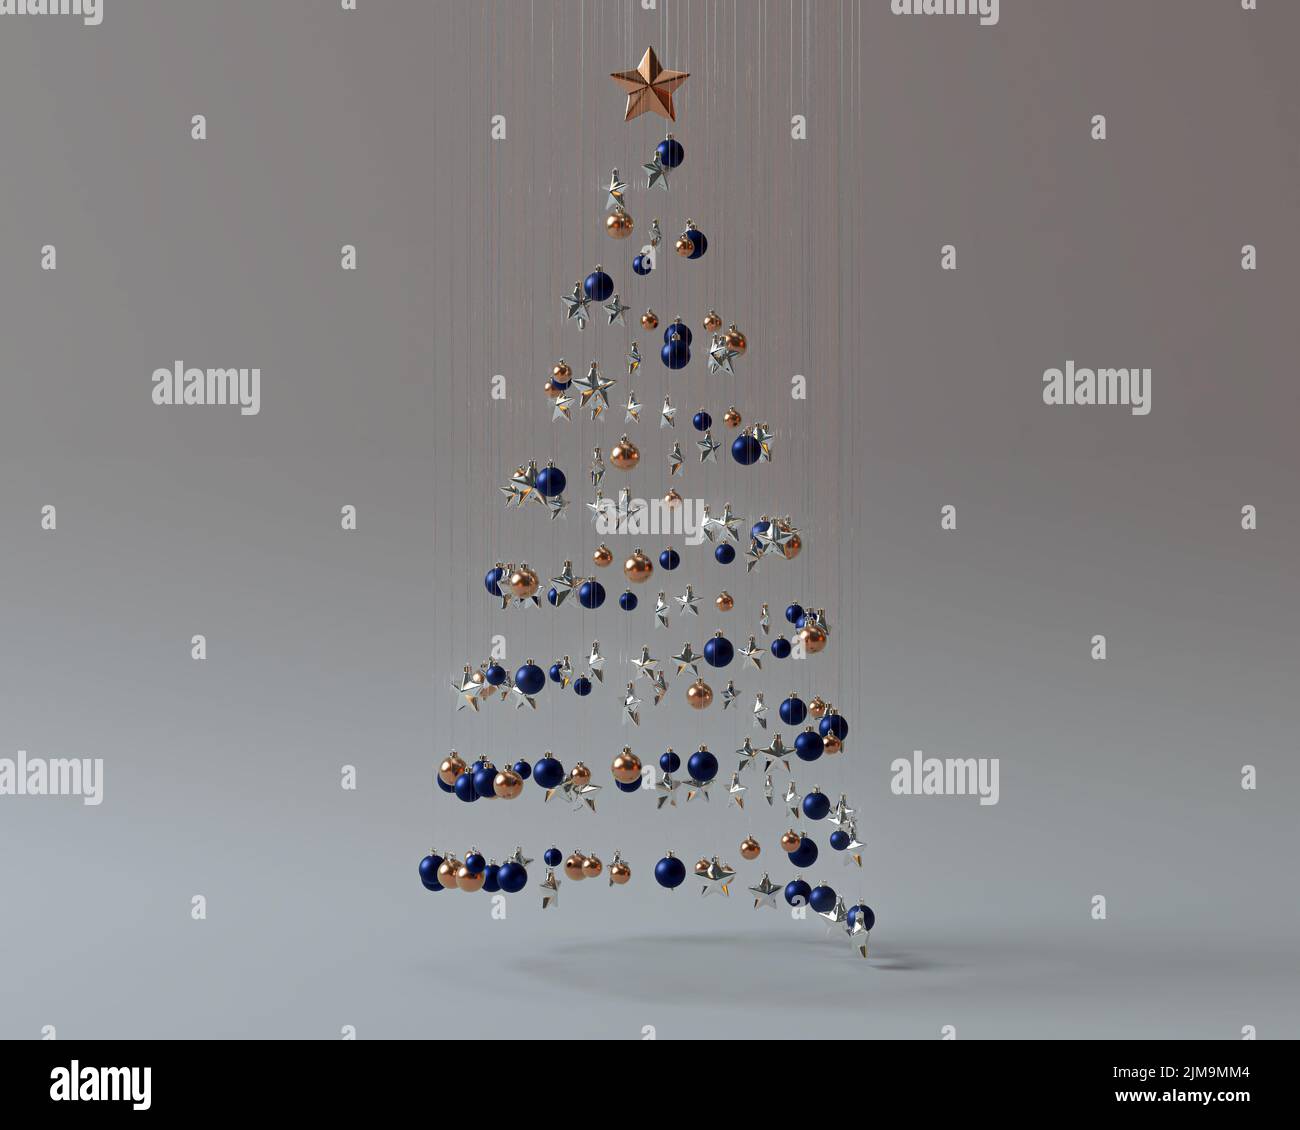 Un concepto de una colección de decoraciones de navidad colgantes que hacen la forma de un árbol con regalos envueltos suspendidos debajo - 3D render Foto de stock